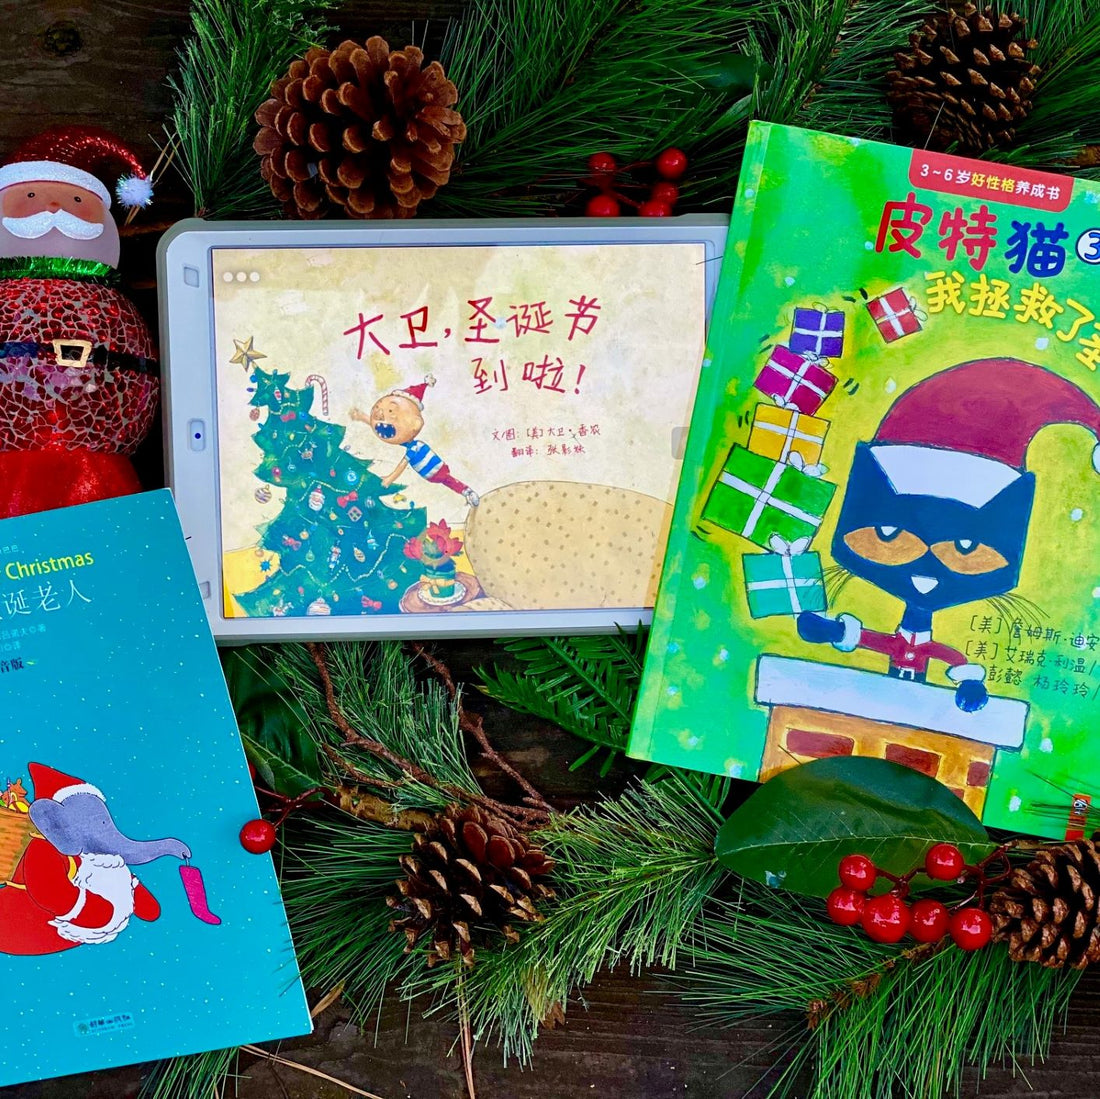 16 Great Christmas Books in Mandarin Chinese